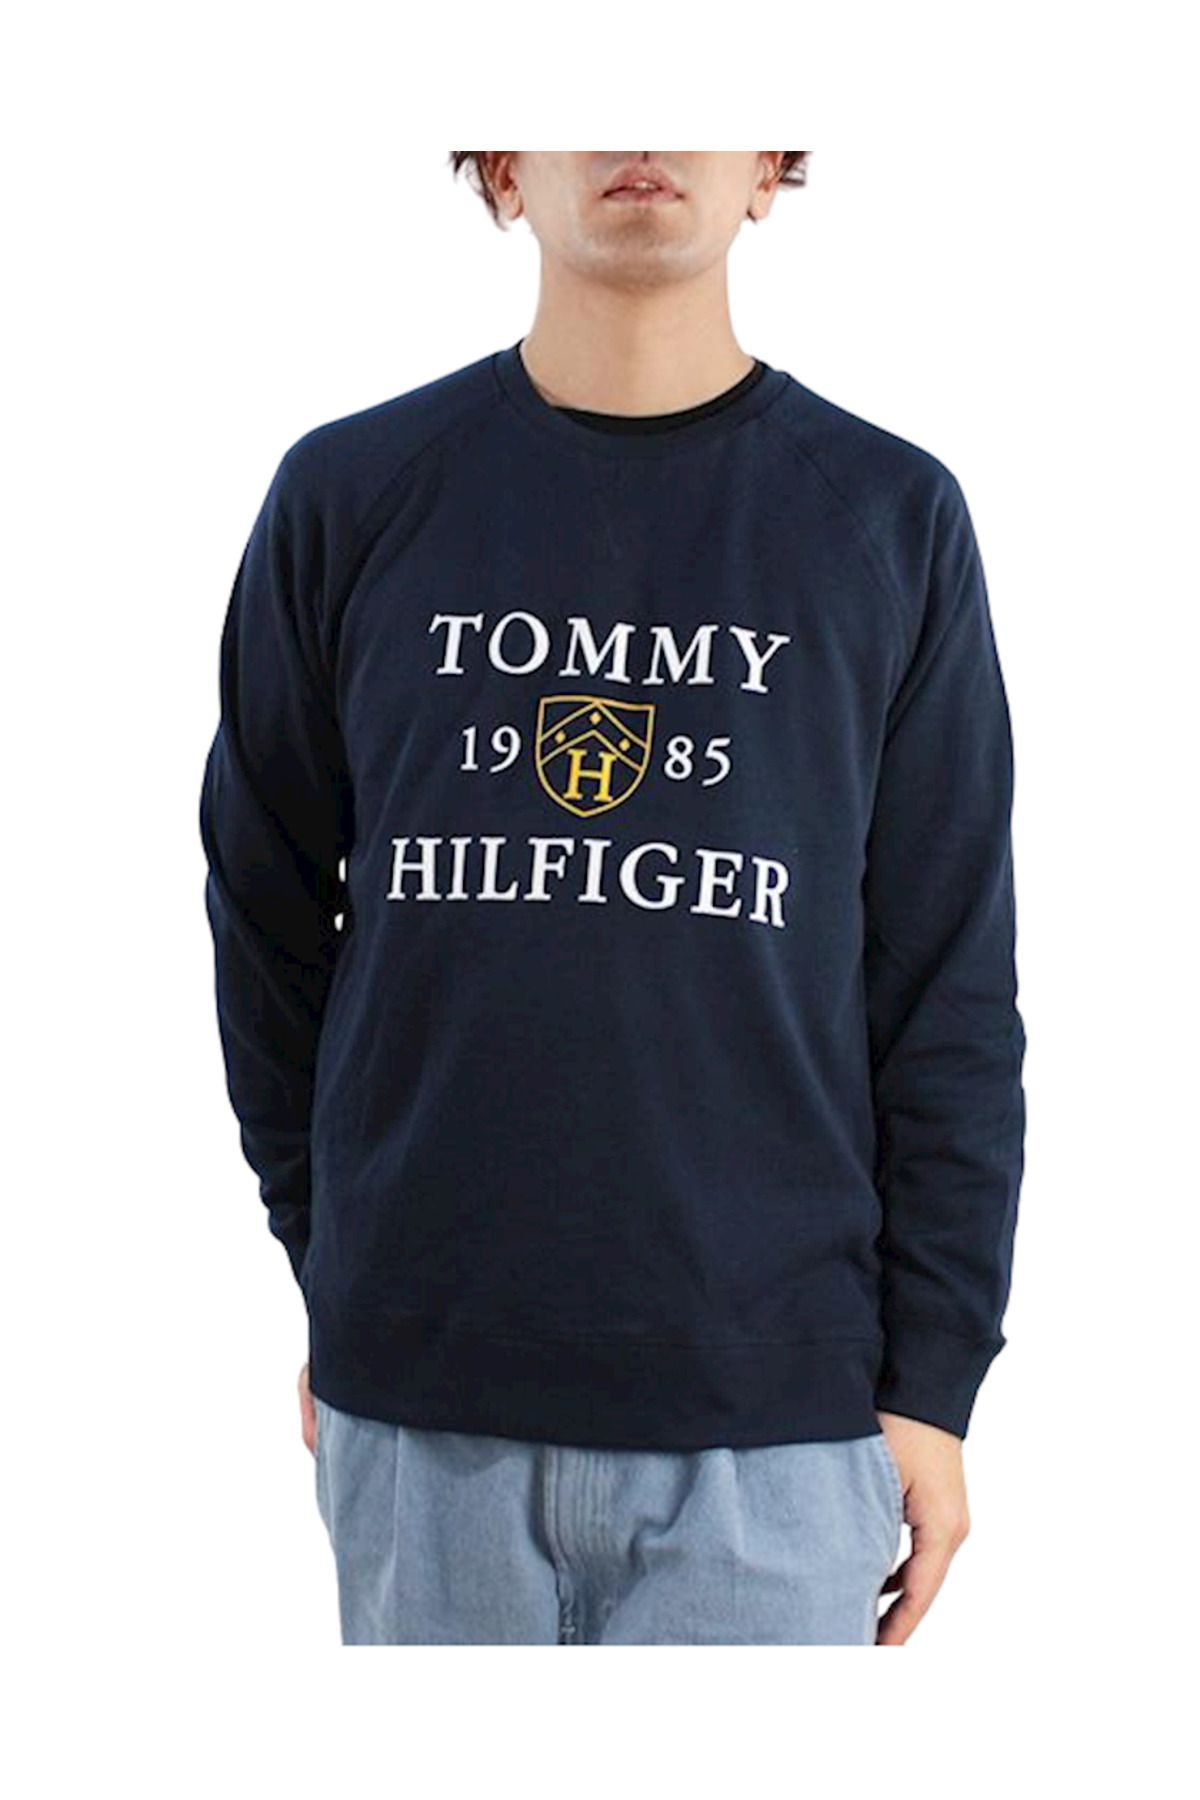 Tommy Hilfiger Tommy Hılfıger Erkek Sweatshırt 09t4201-410